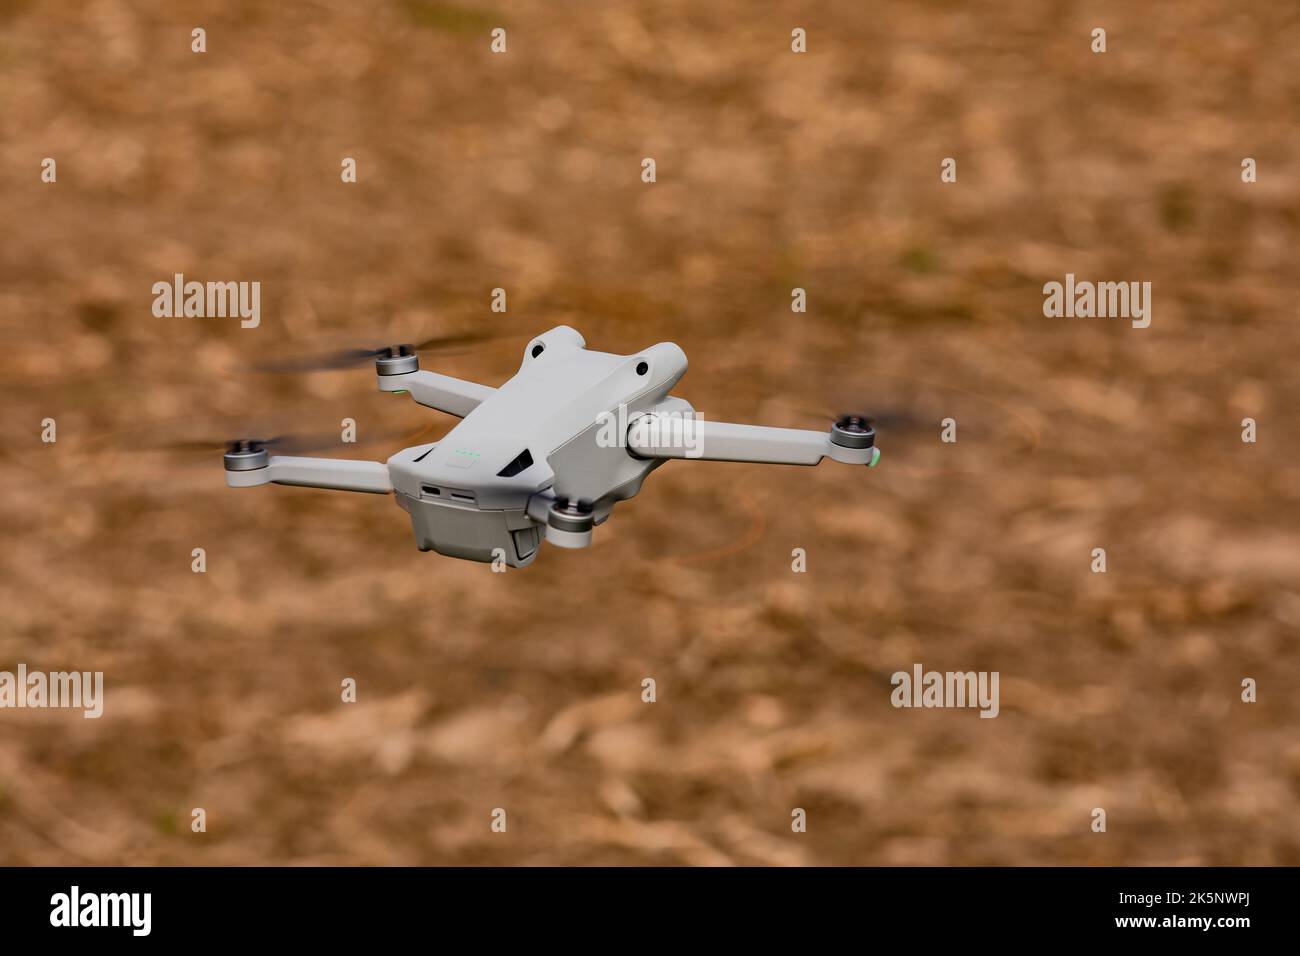 Un drone de caméra mobile ou multipter avec des rotors tournants isolés à l'extérieur en survolant un champ Banque D'Images